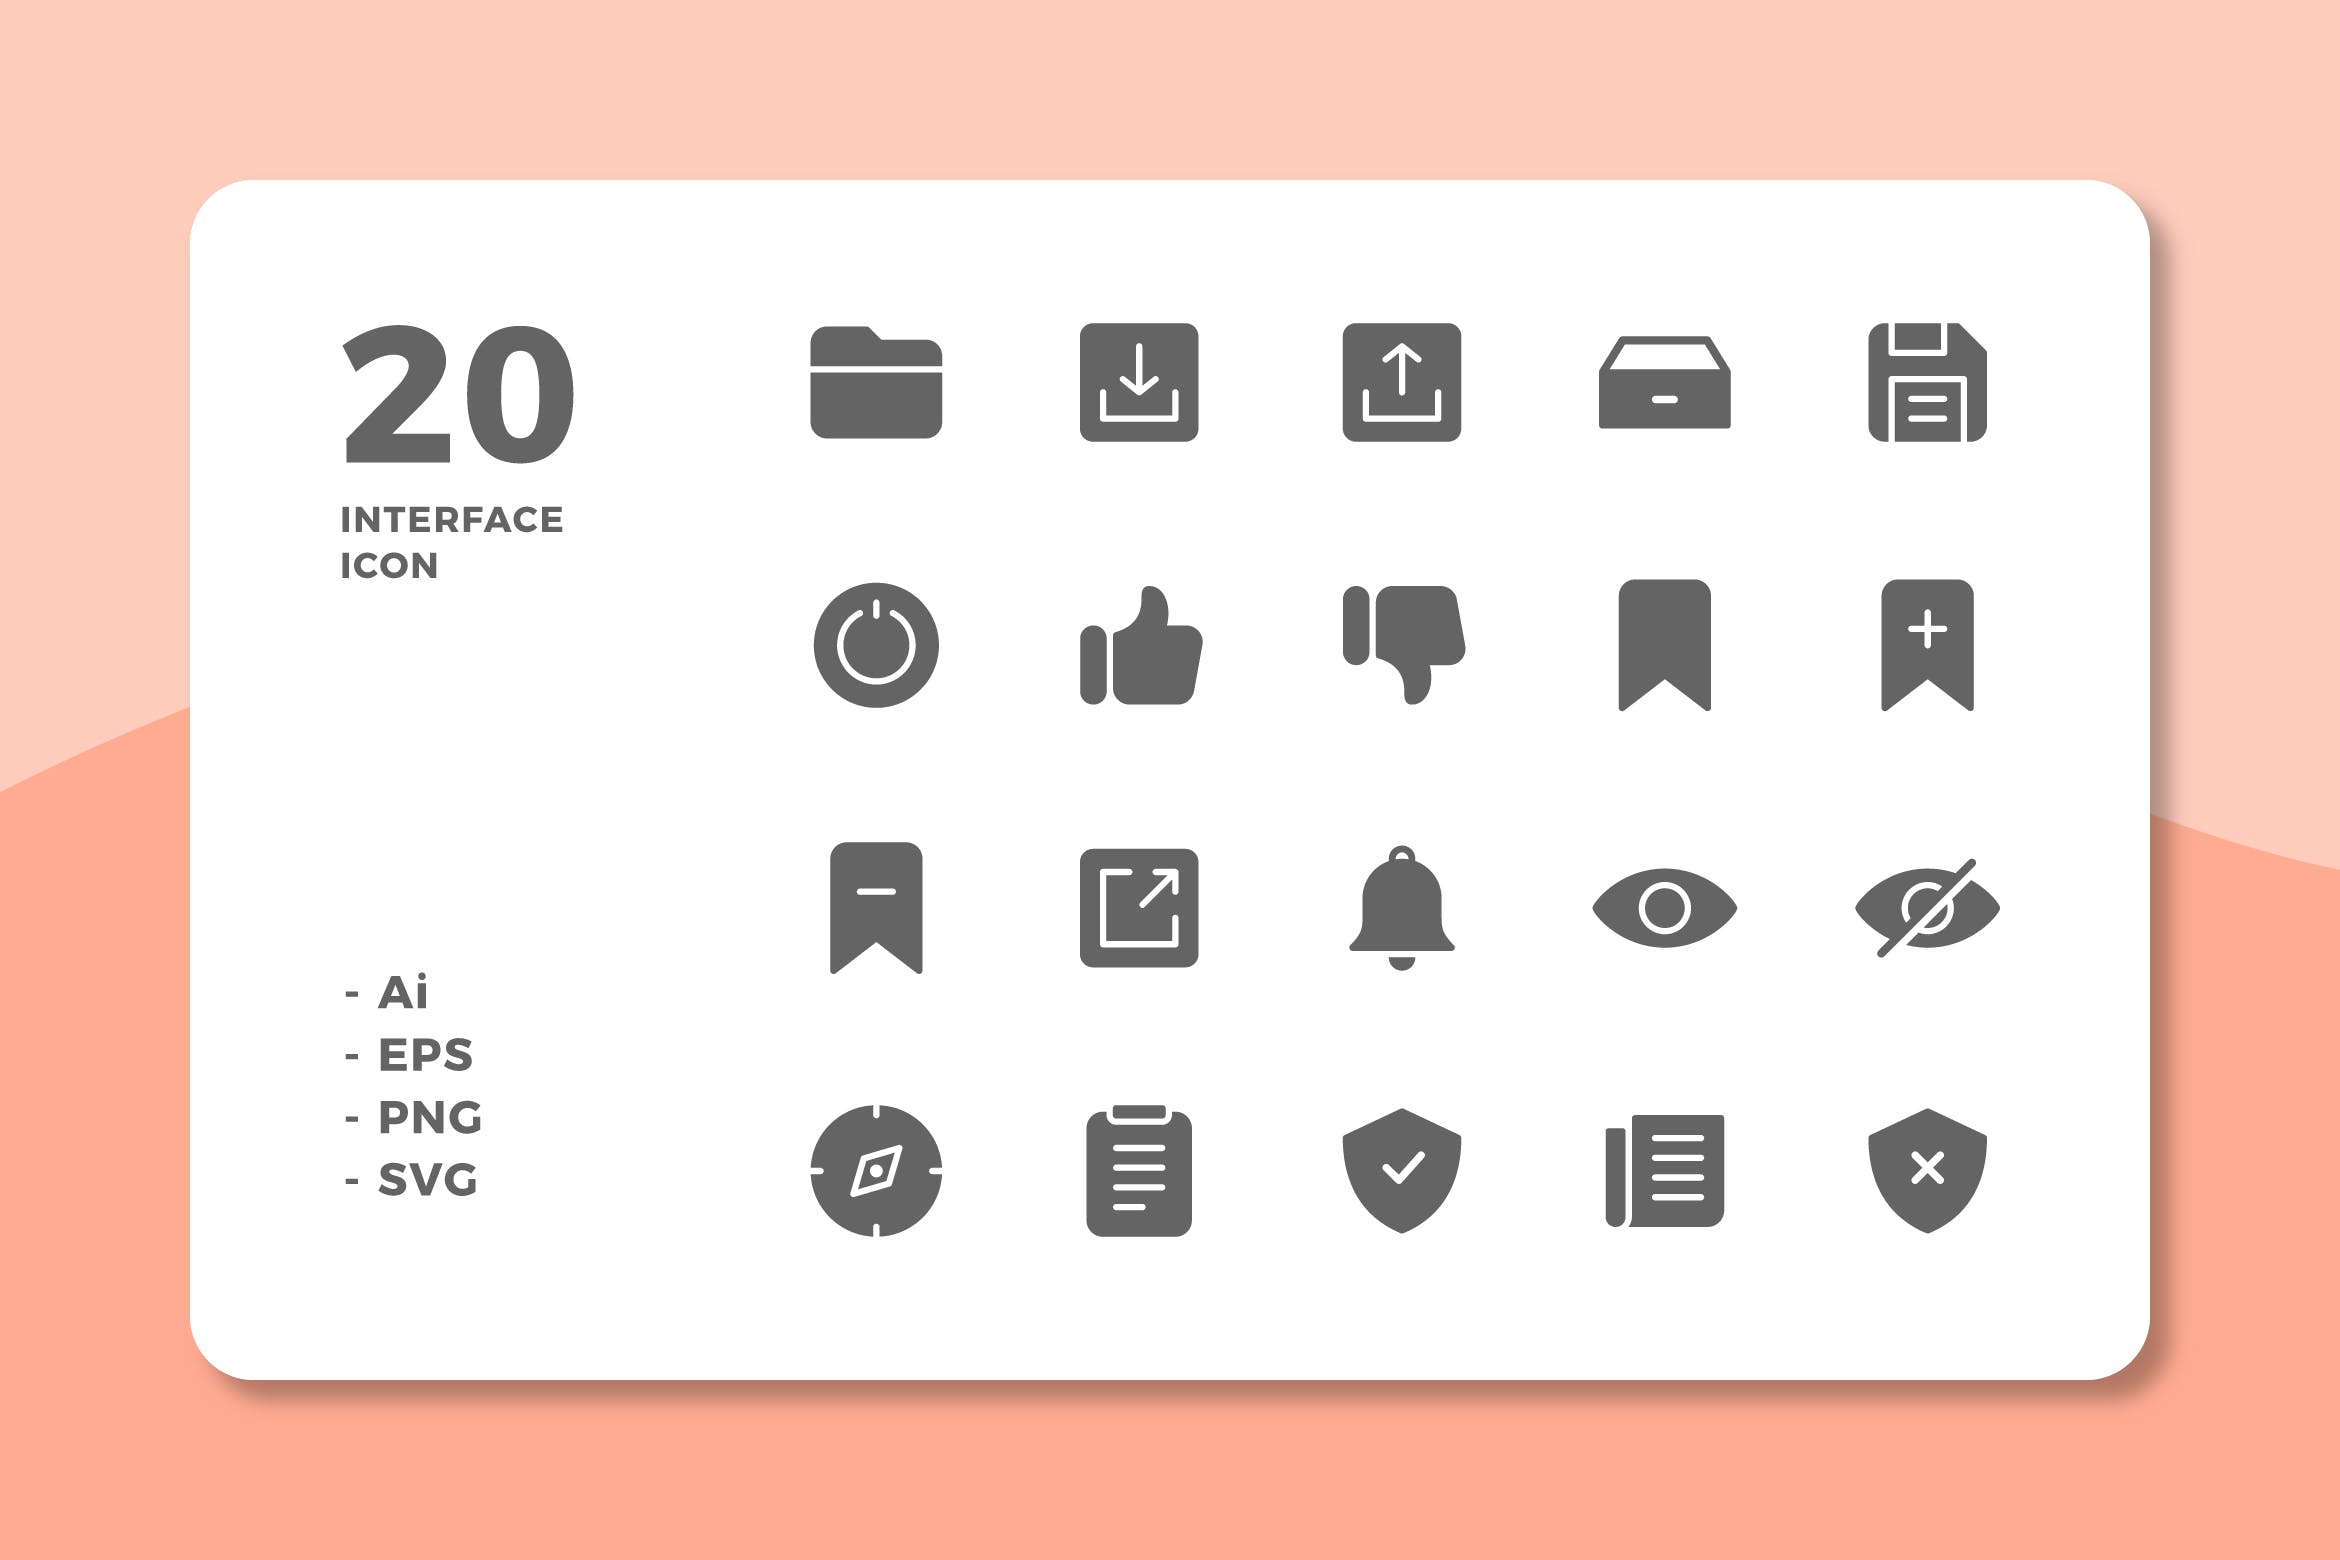 20枚UI界面设计APP操作选项亿图网易图库精选图标v3 20 Interface Icons Vol.3 (Solid)插图